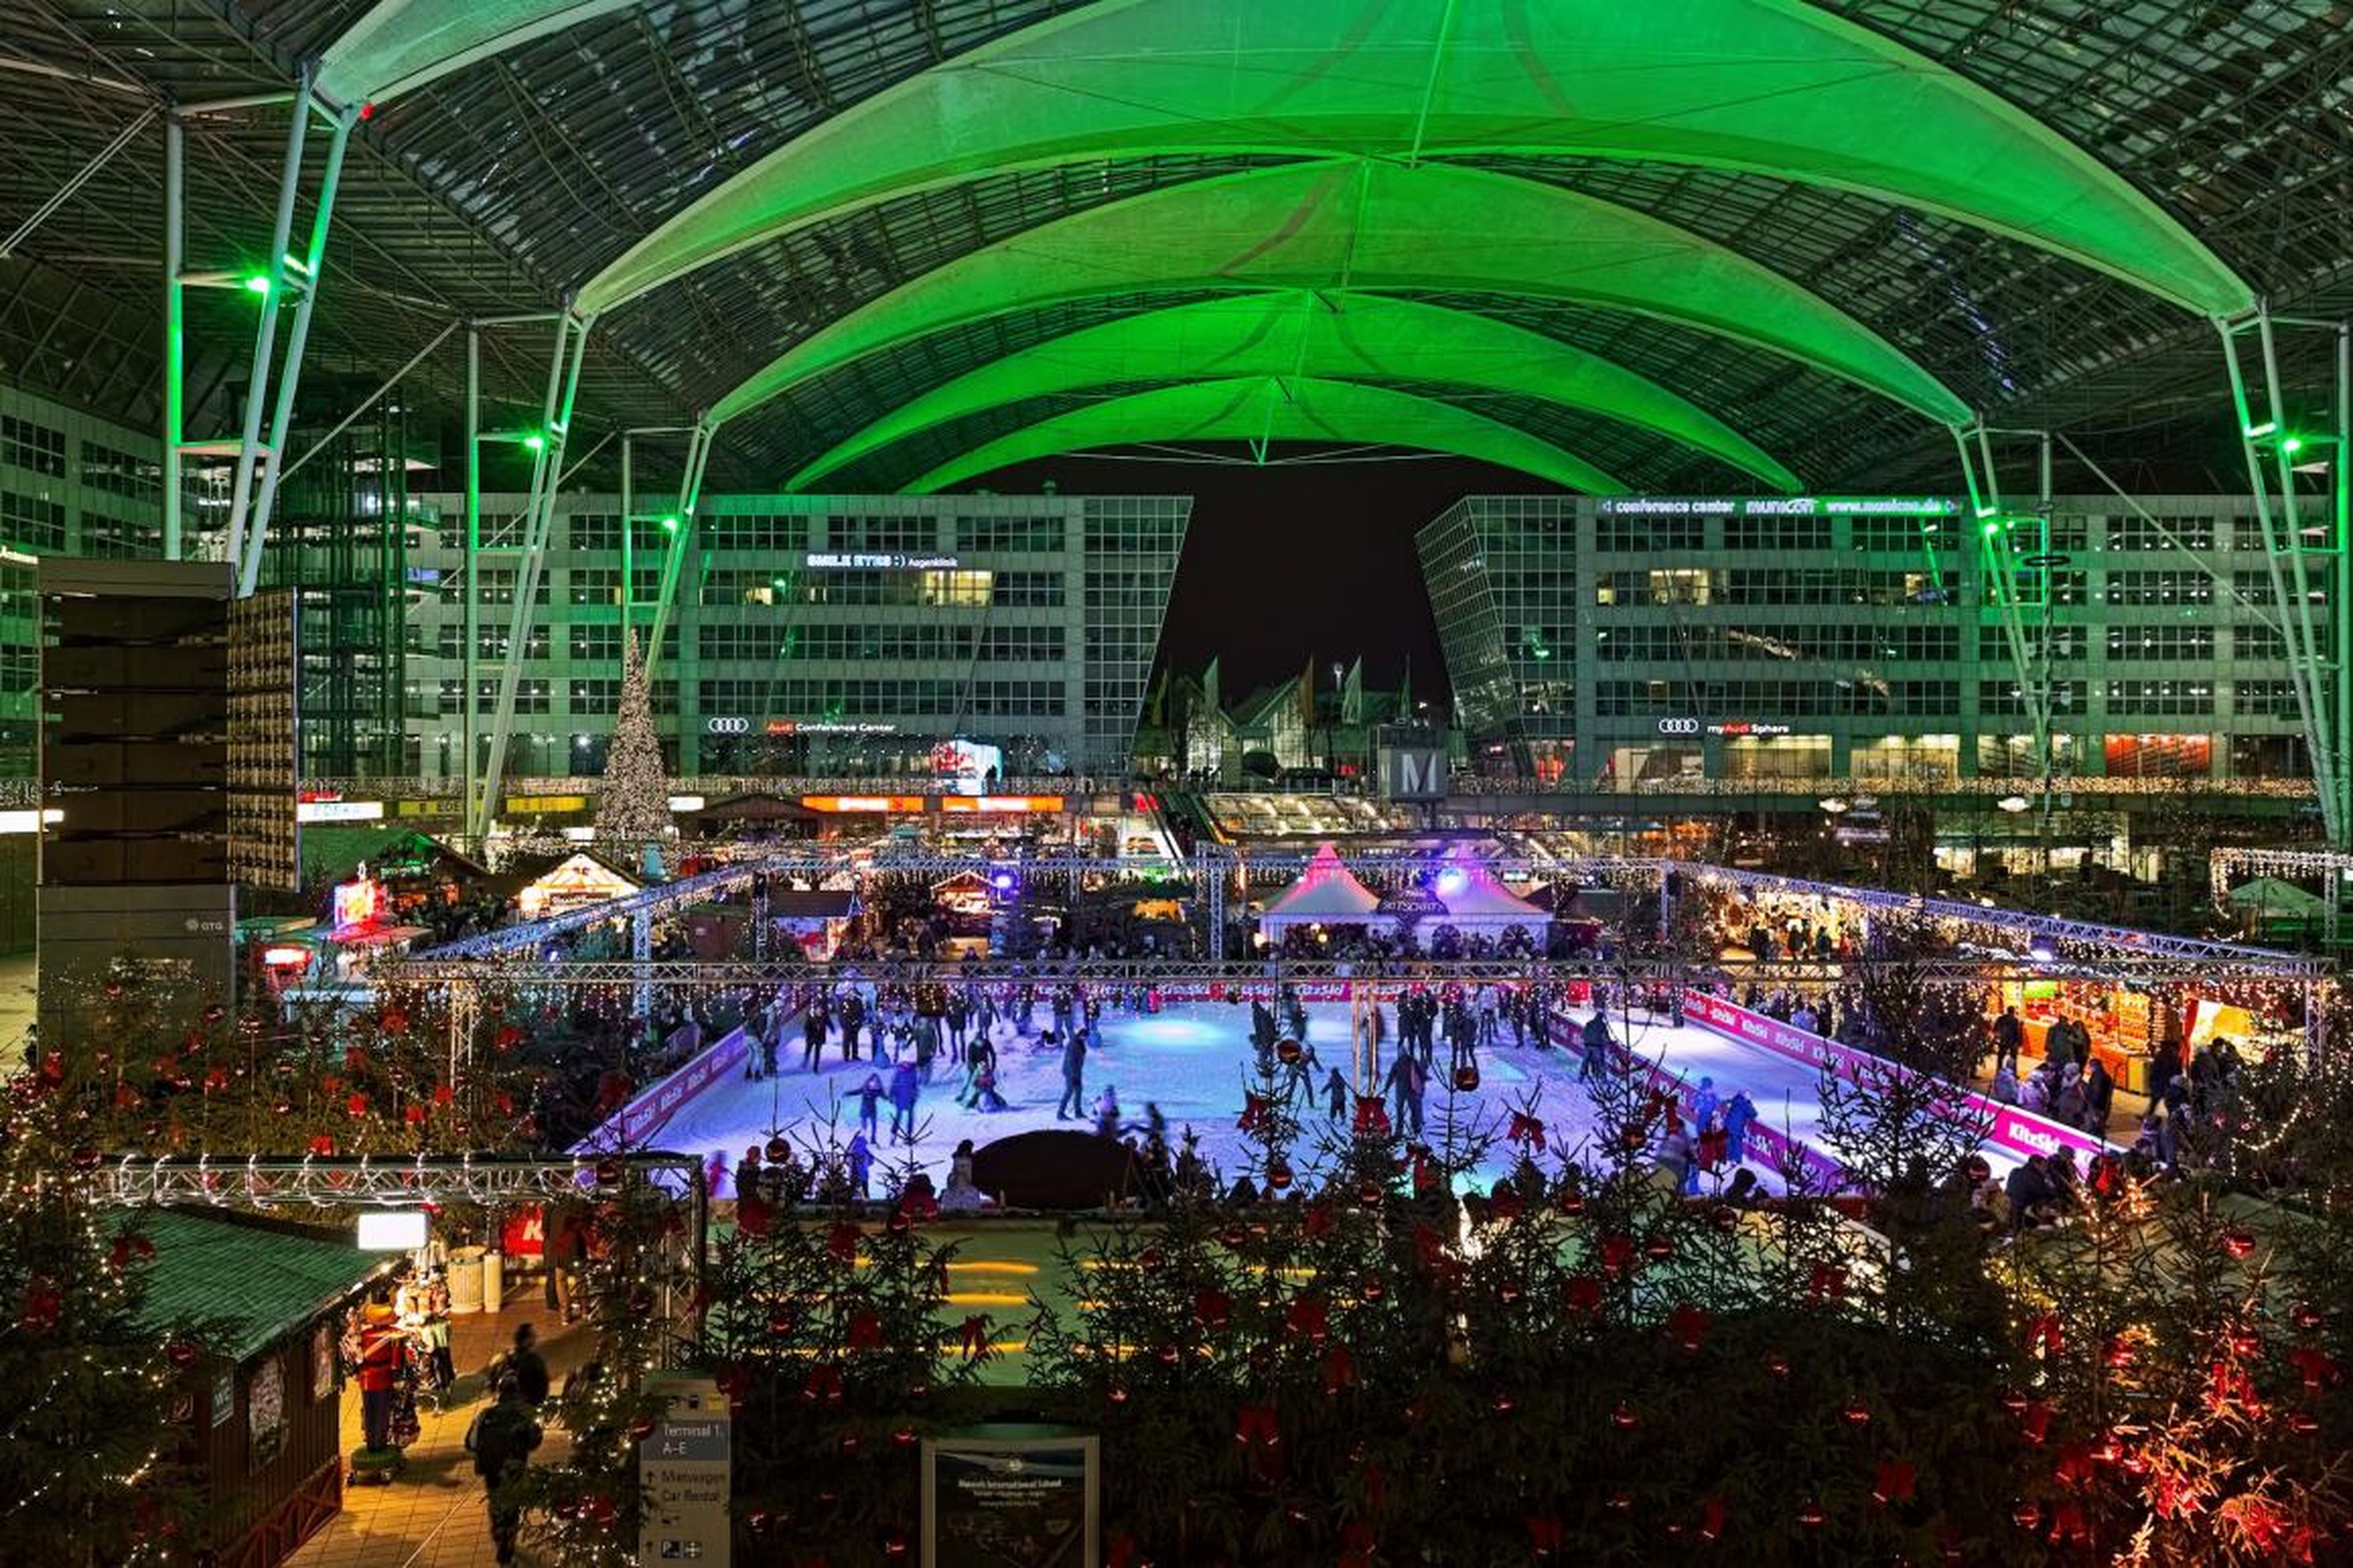 Mercado de Navidad e Invierno con pista de hielo en el aeropuerto de Munich.